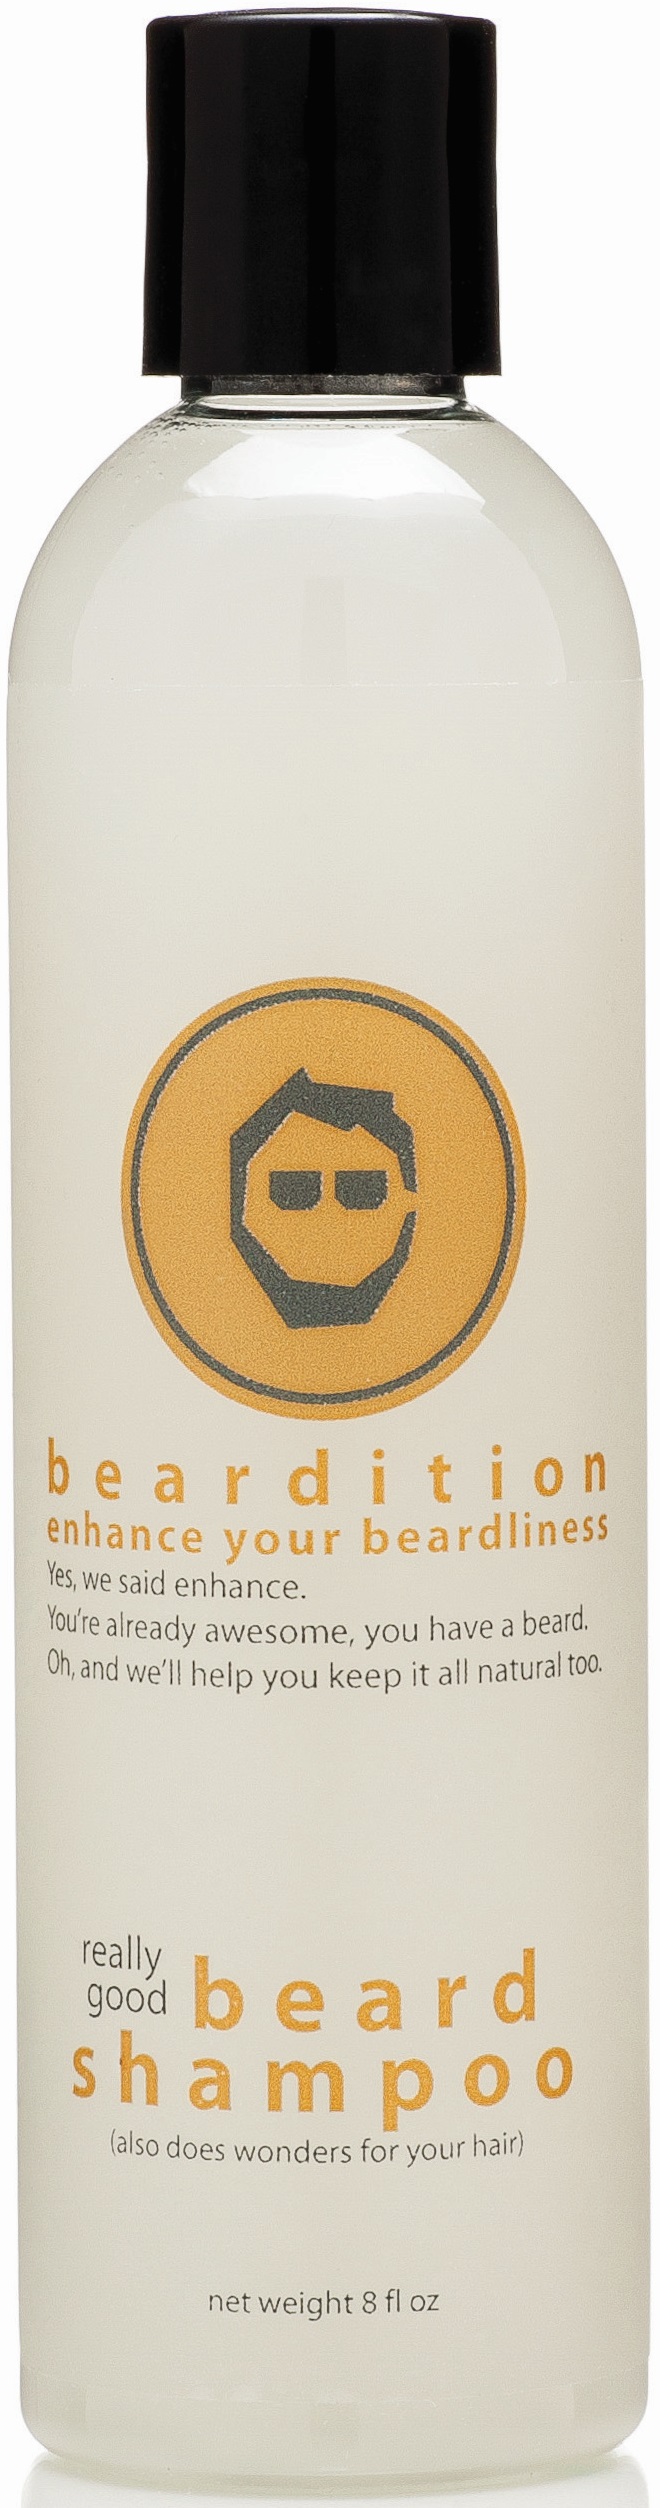 Beardition Really Good Beard Shampoo